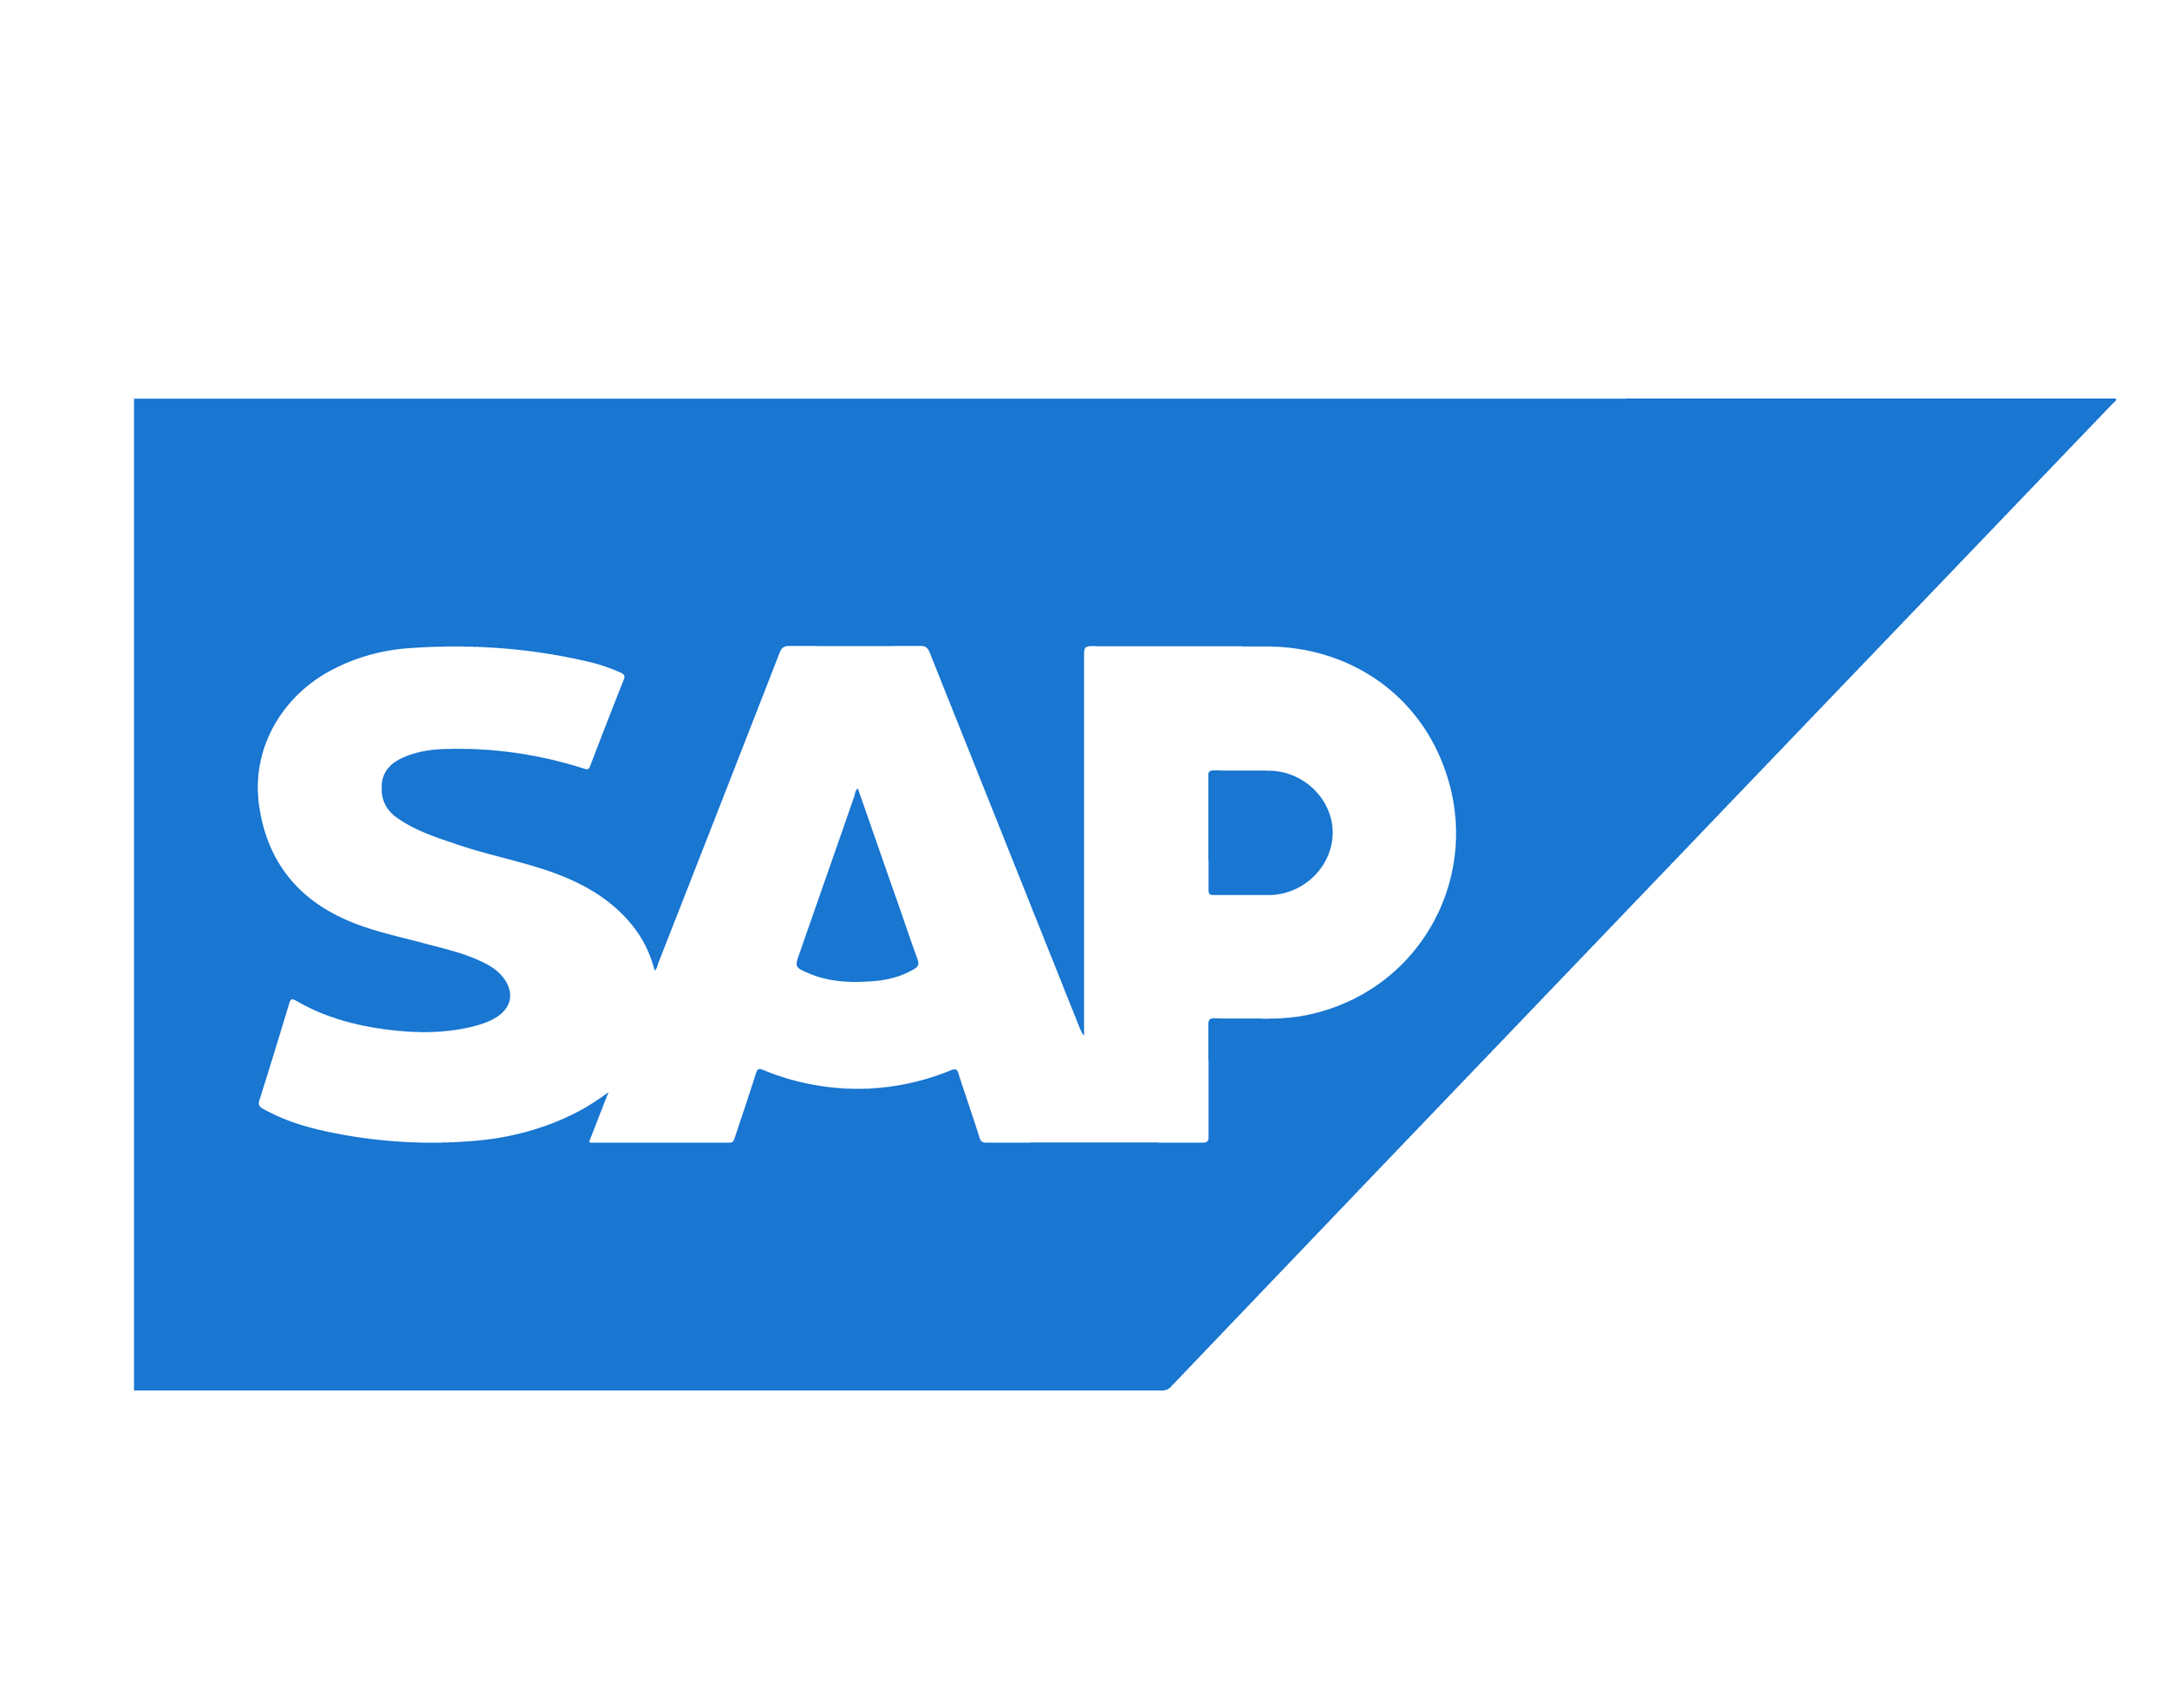 SAP web logo.png